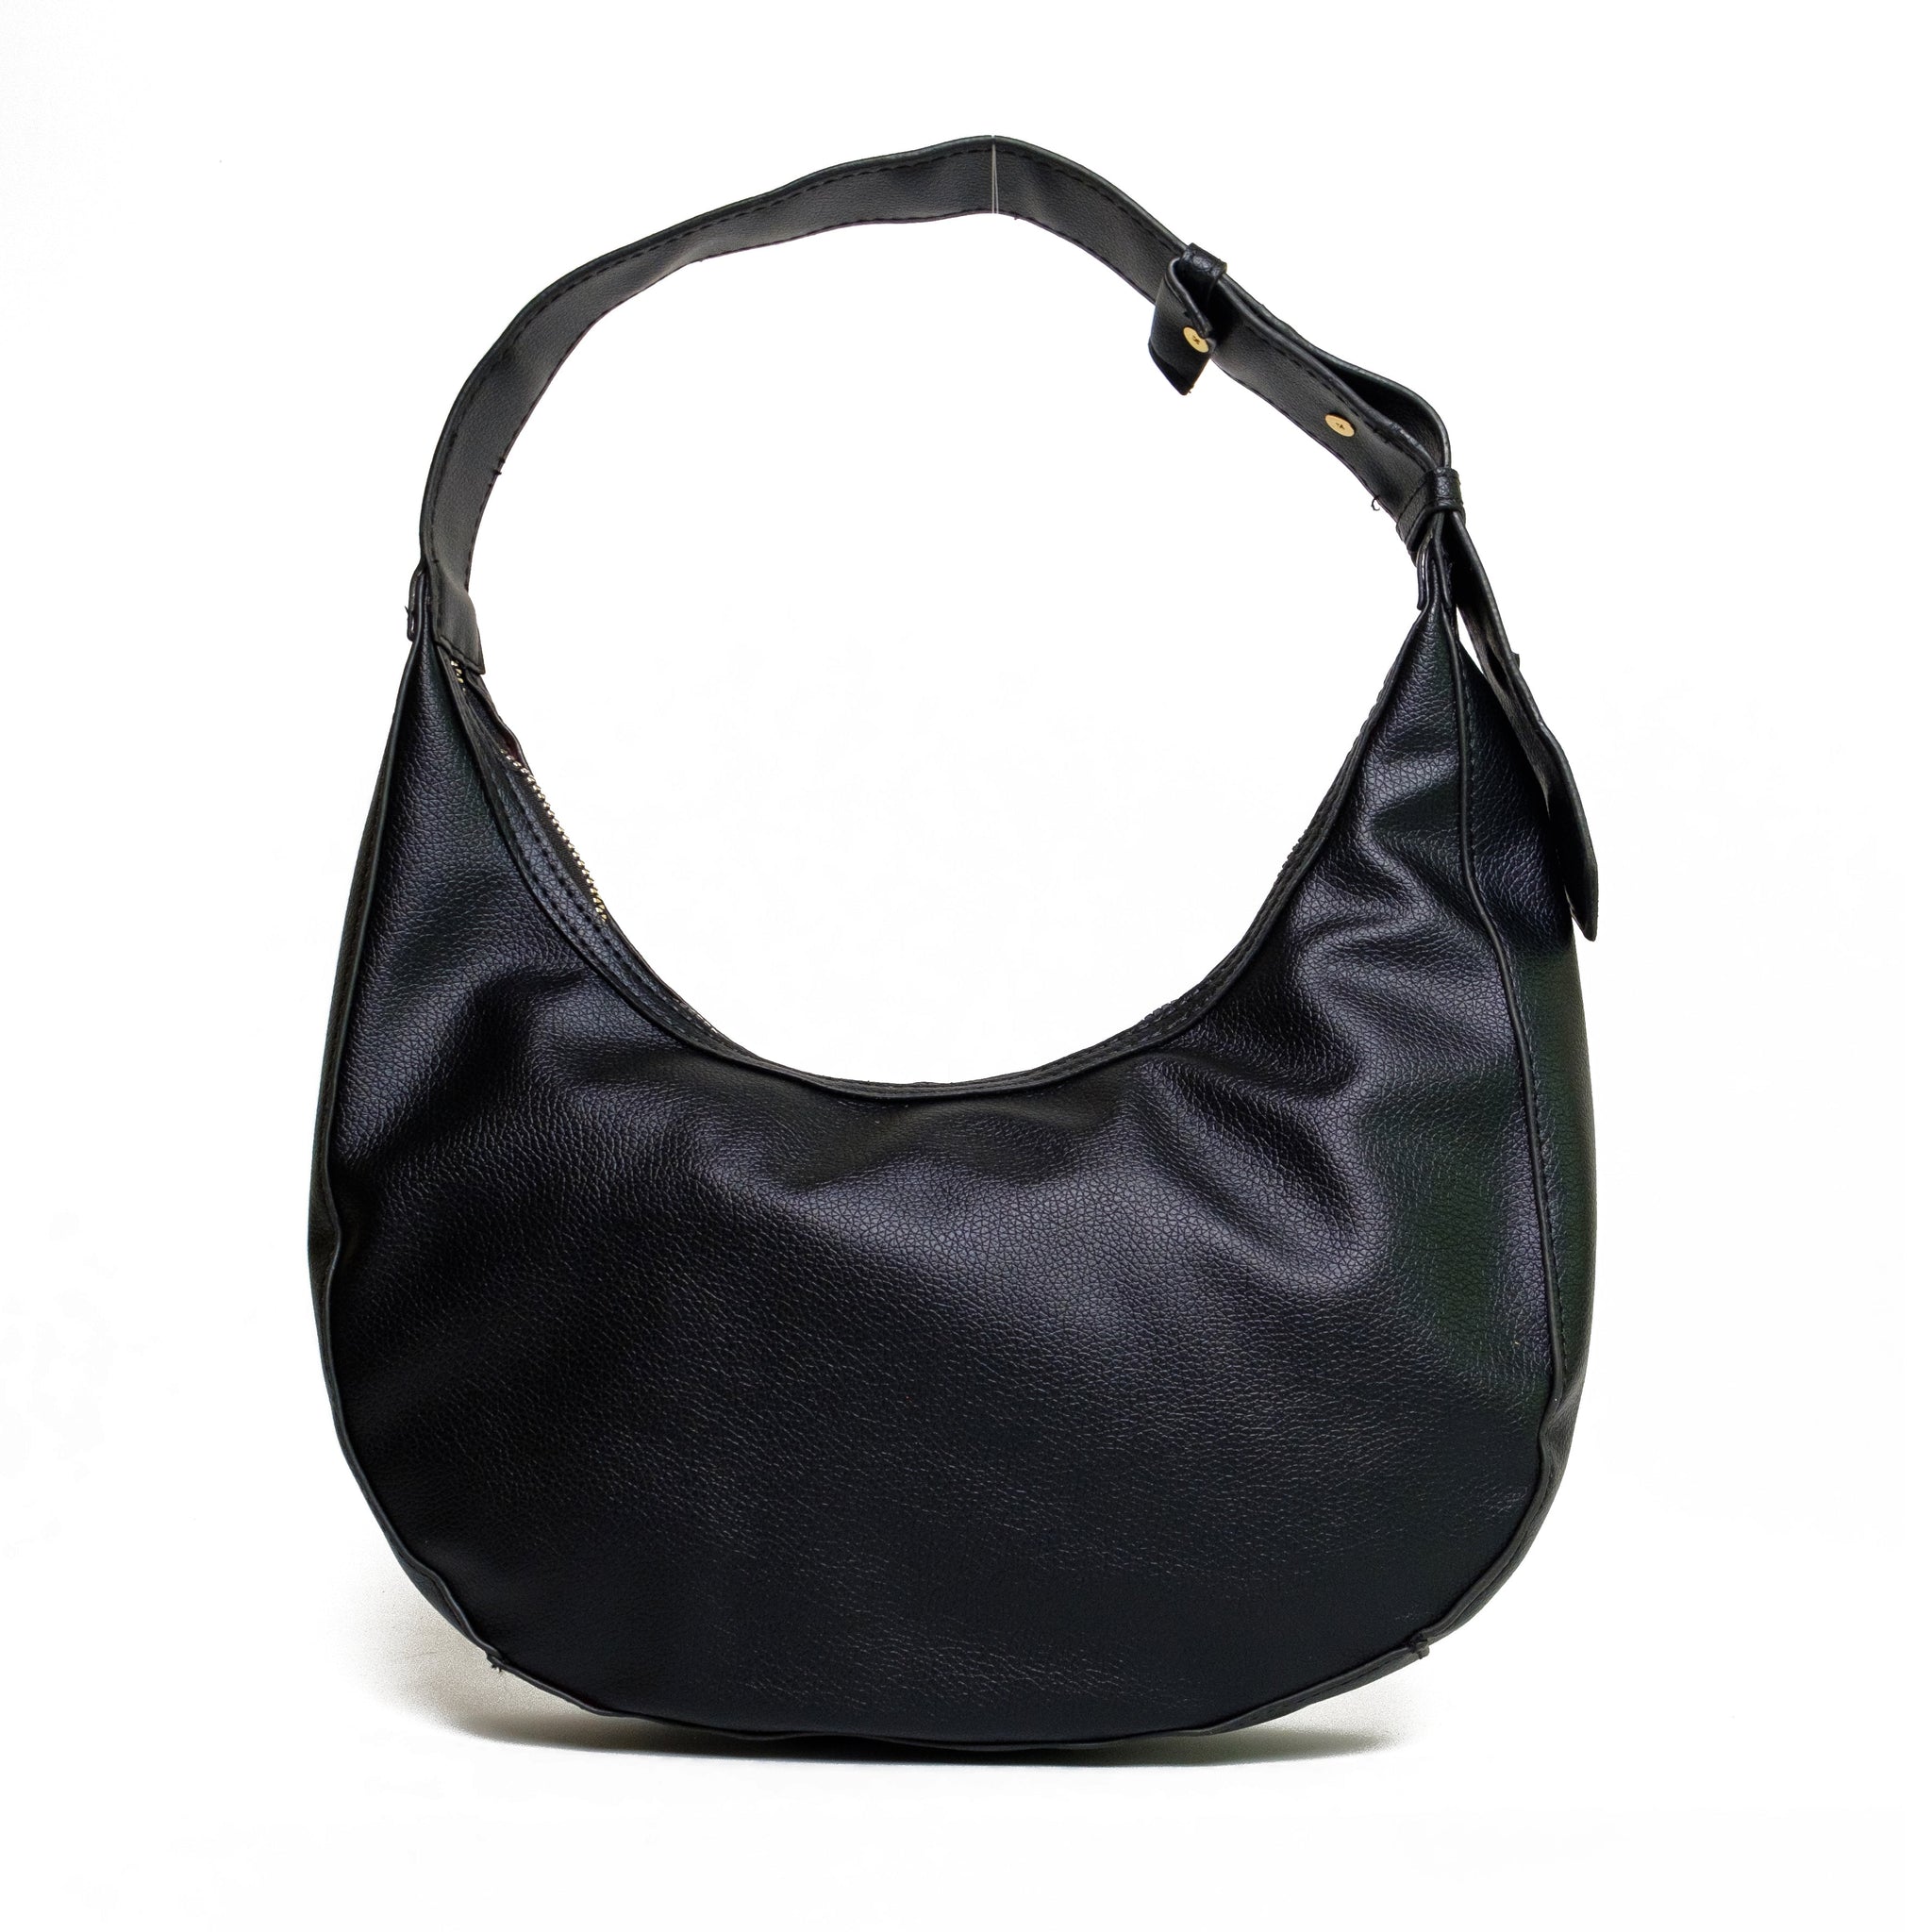 Chokore Shoulder Bag with Adjustable Strap